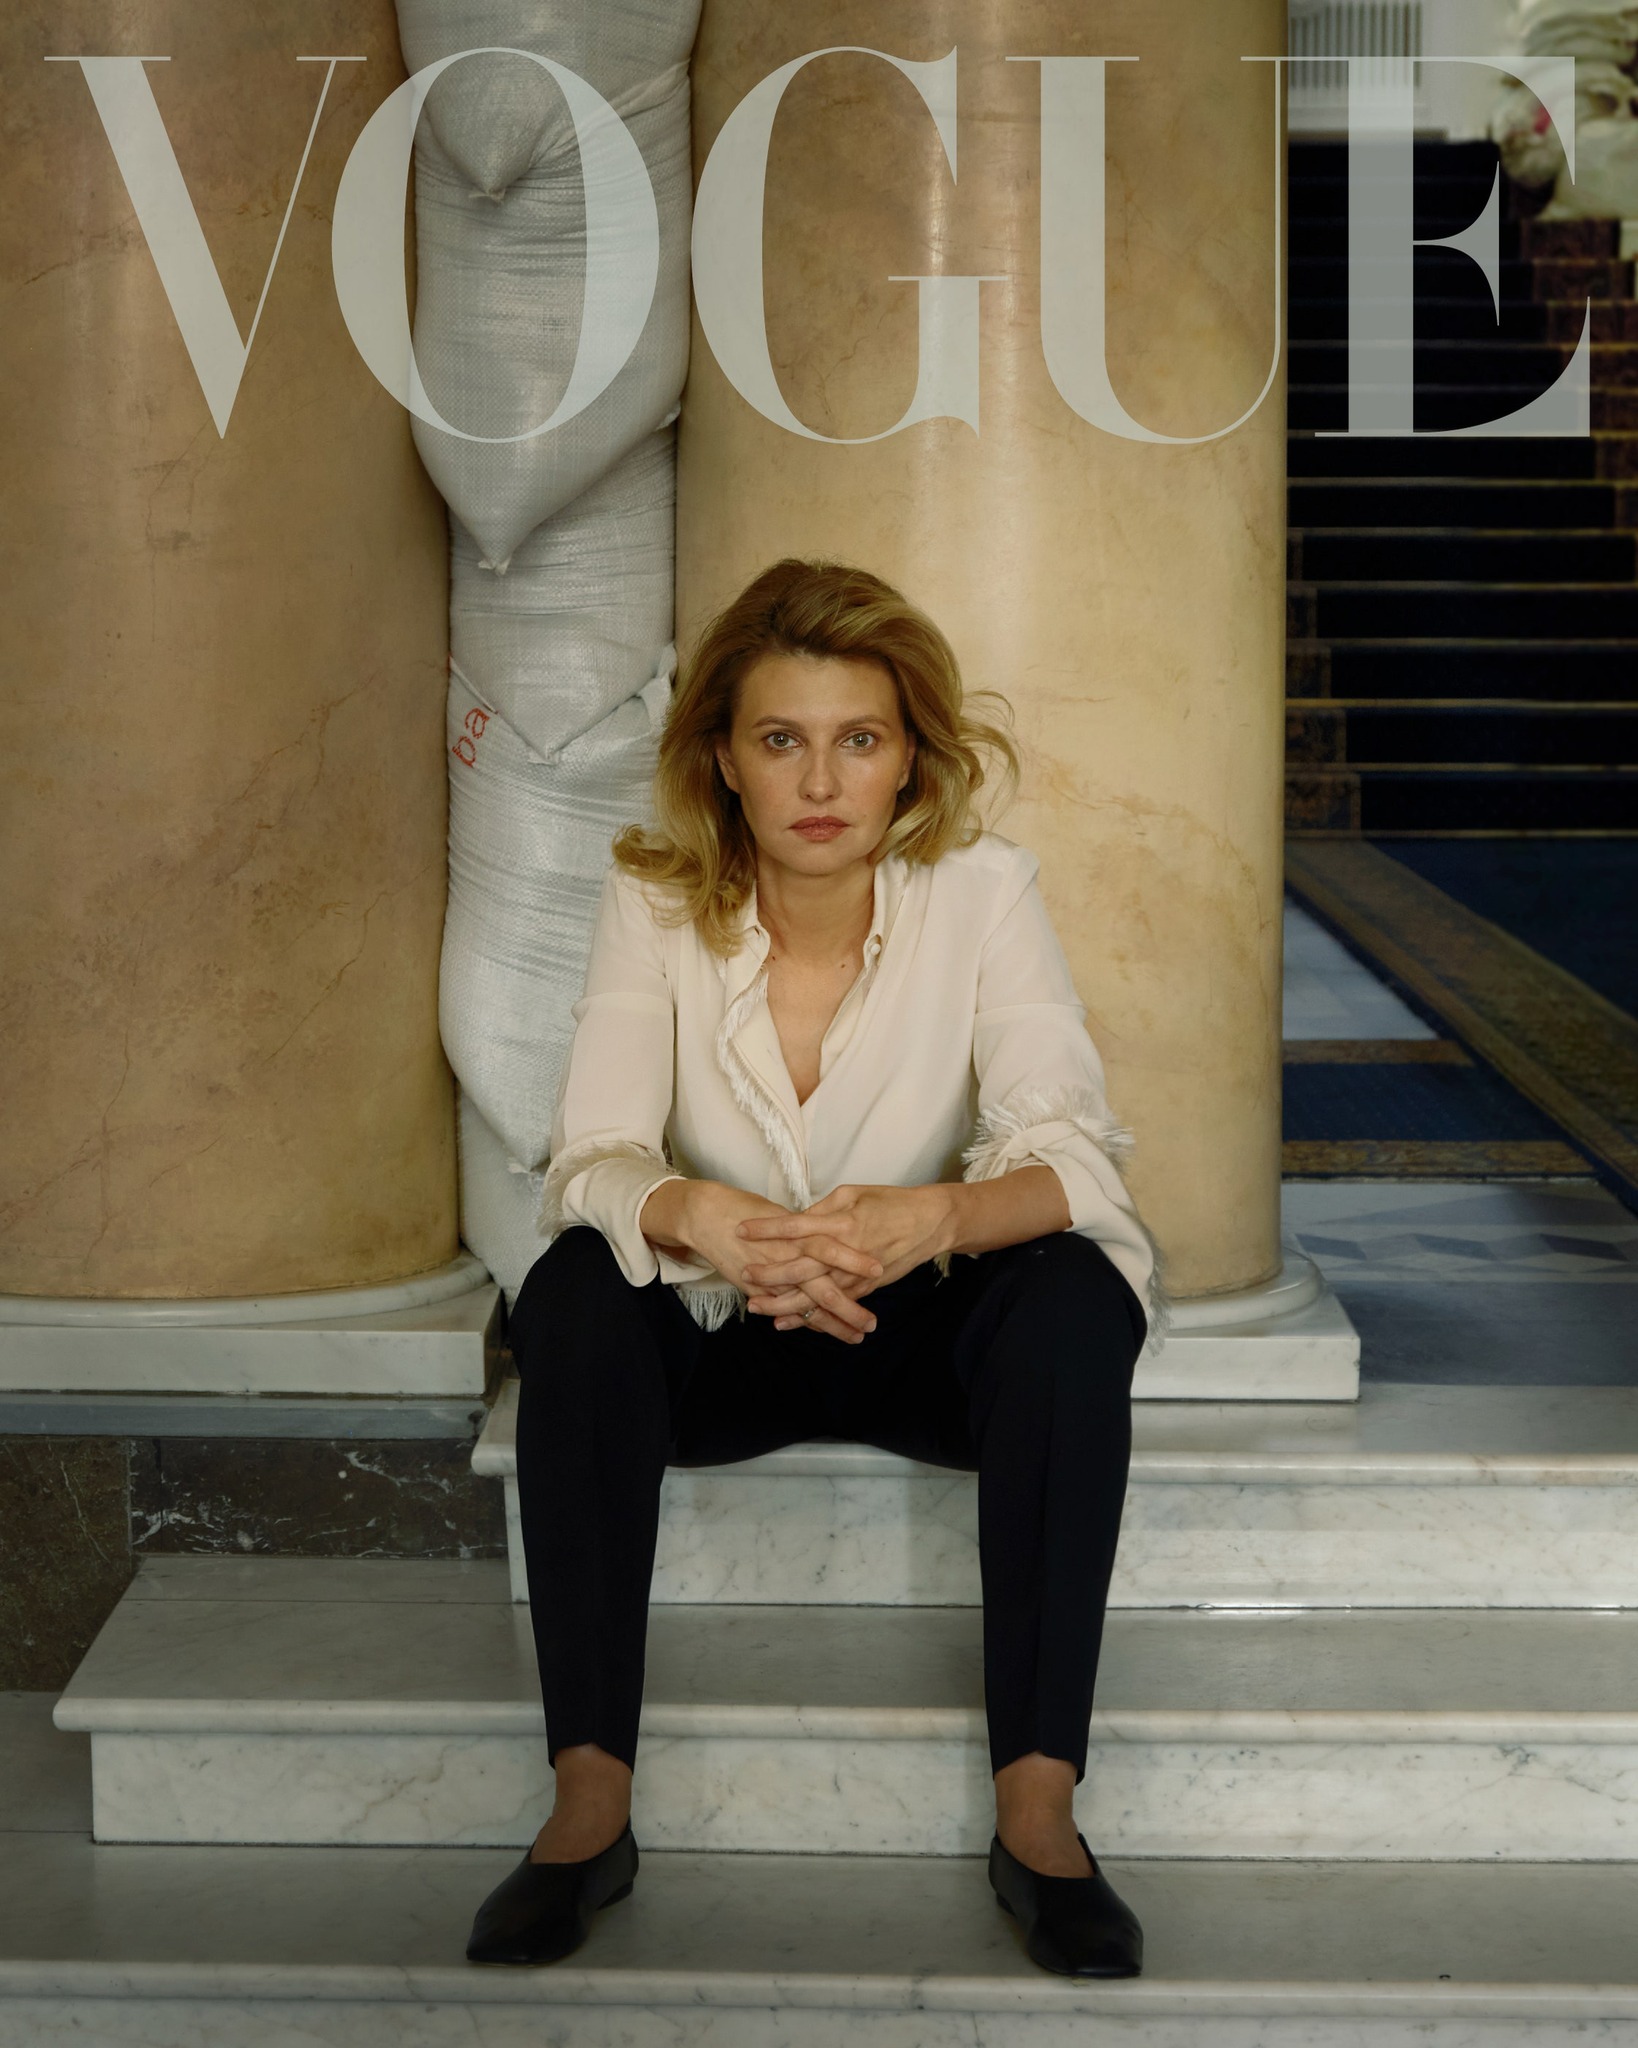 Позитура Зеленской на фото для Vogue – это 10 из 10. Кто еще не понял, объясняю тонкости